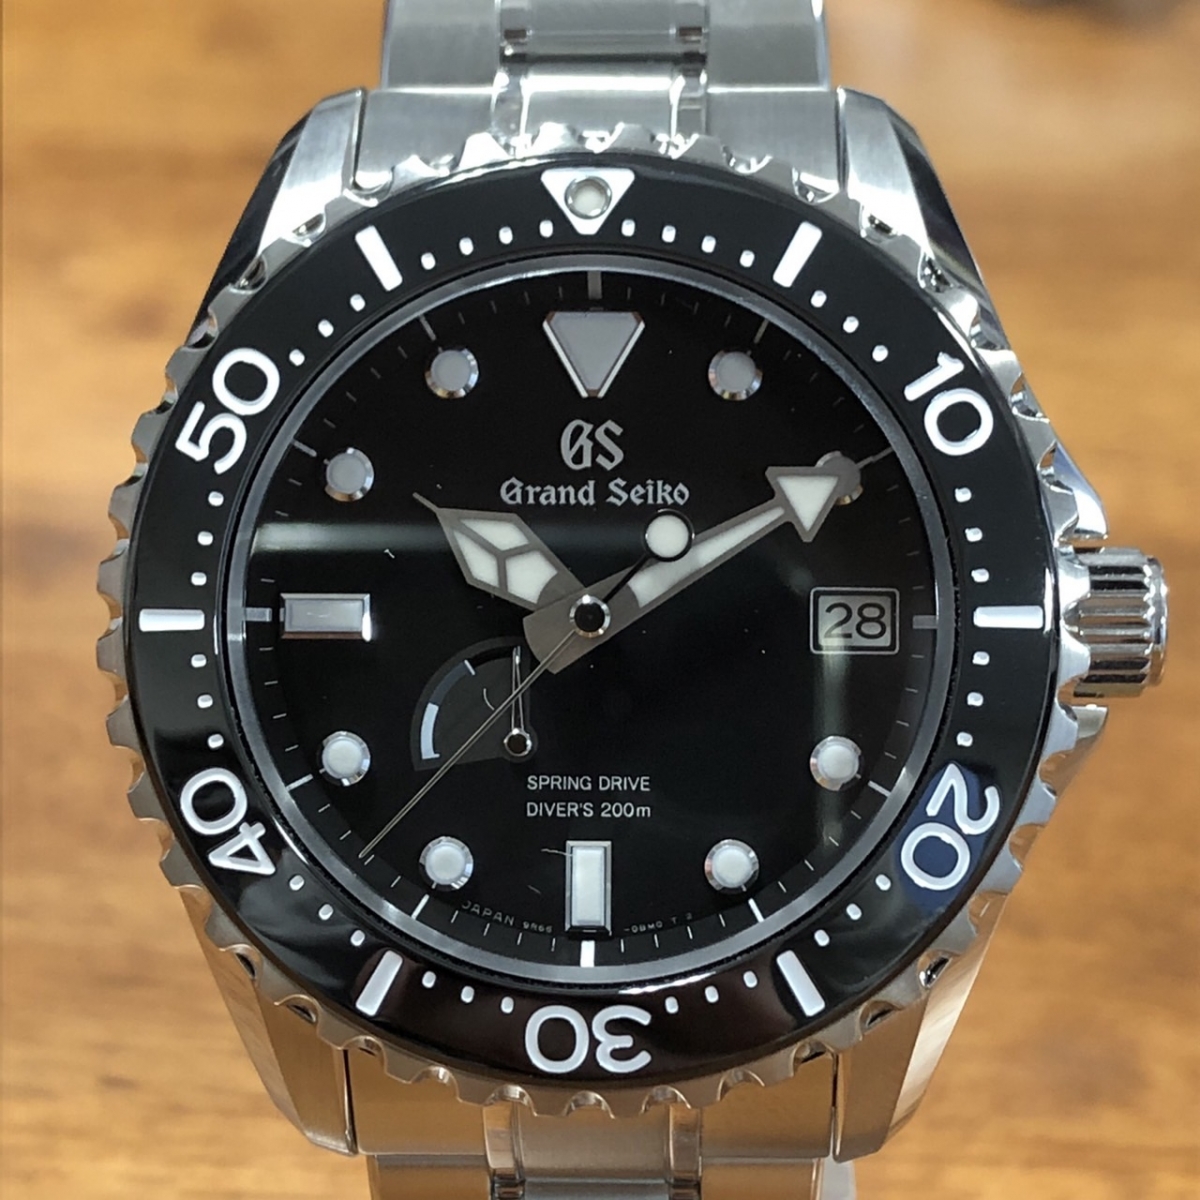 セイコーのスポーツコレクション スプリングドライブダイバーSBGA229 腕時計の買取実績です。